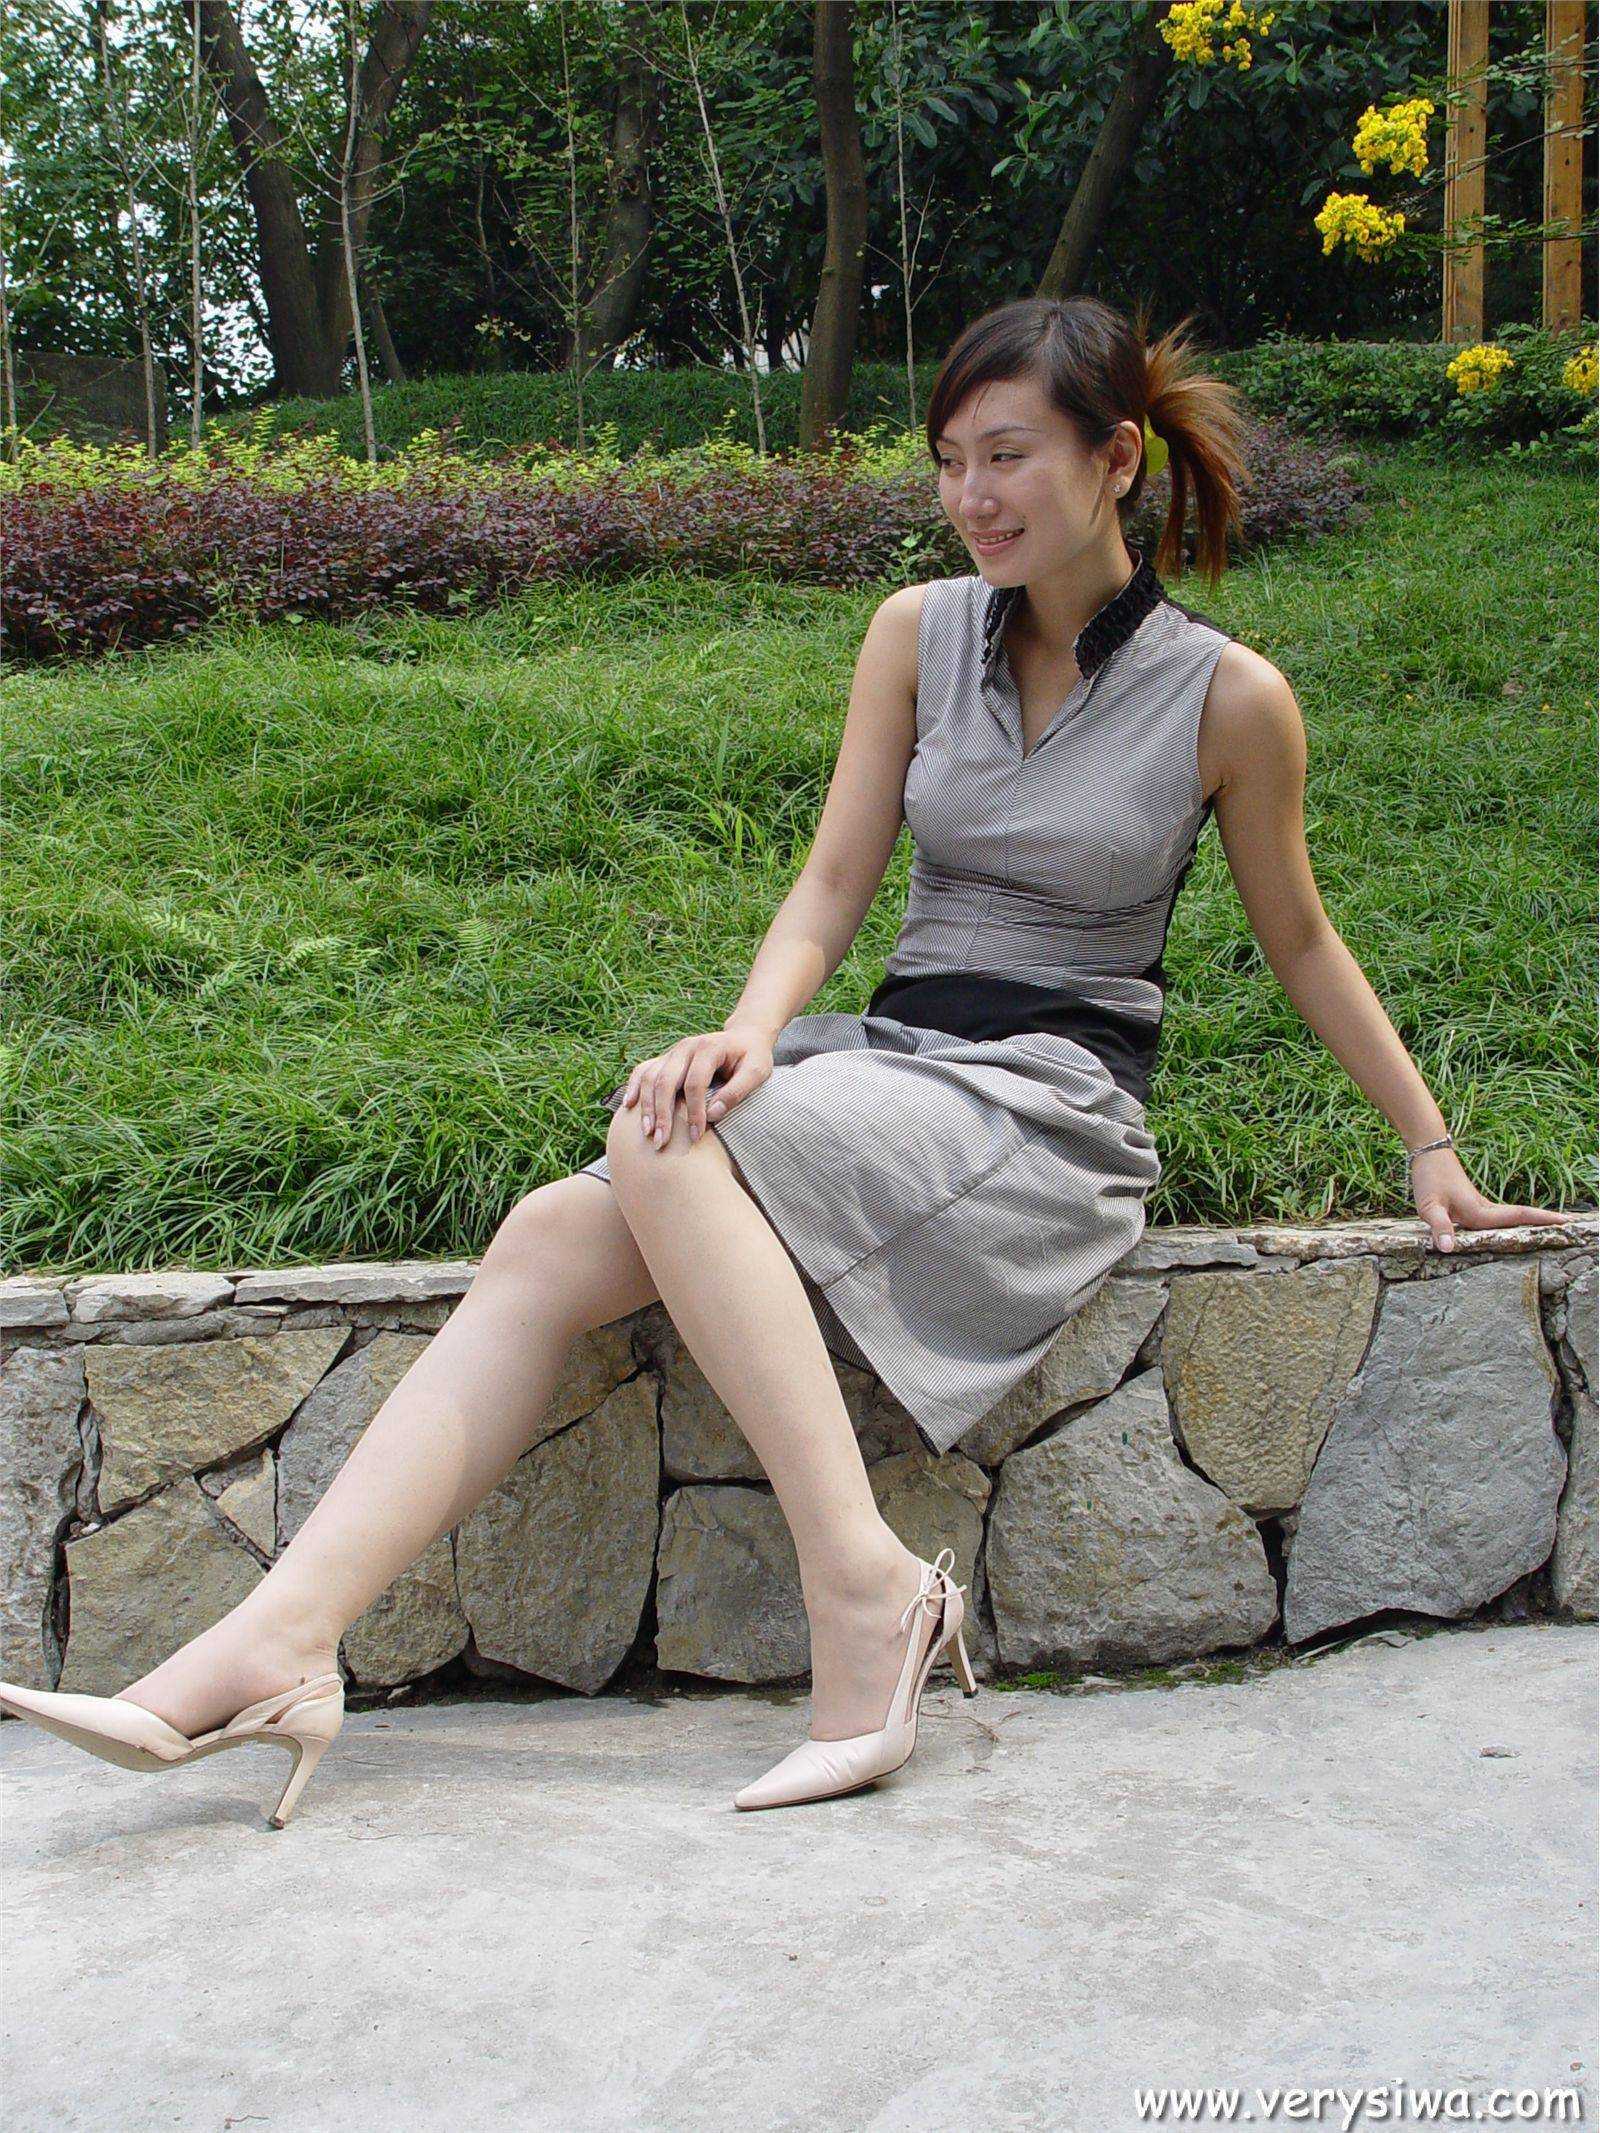 [zhonggaoyi] P005 (Weiwei) sexy stockings beauty picture package download